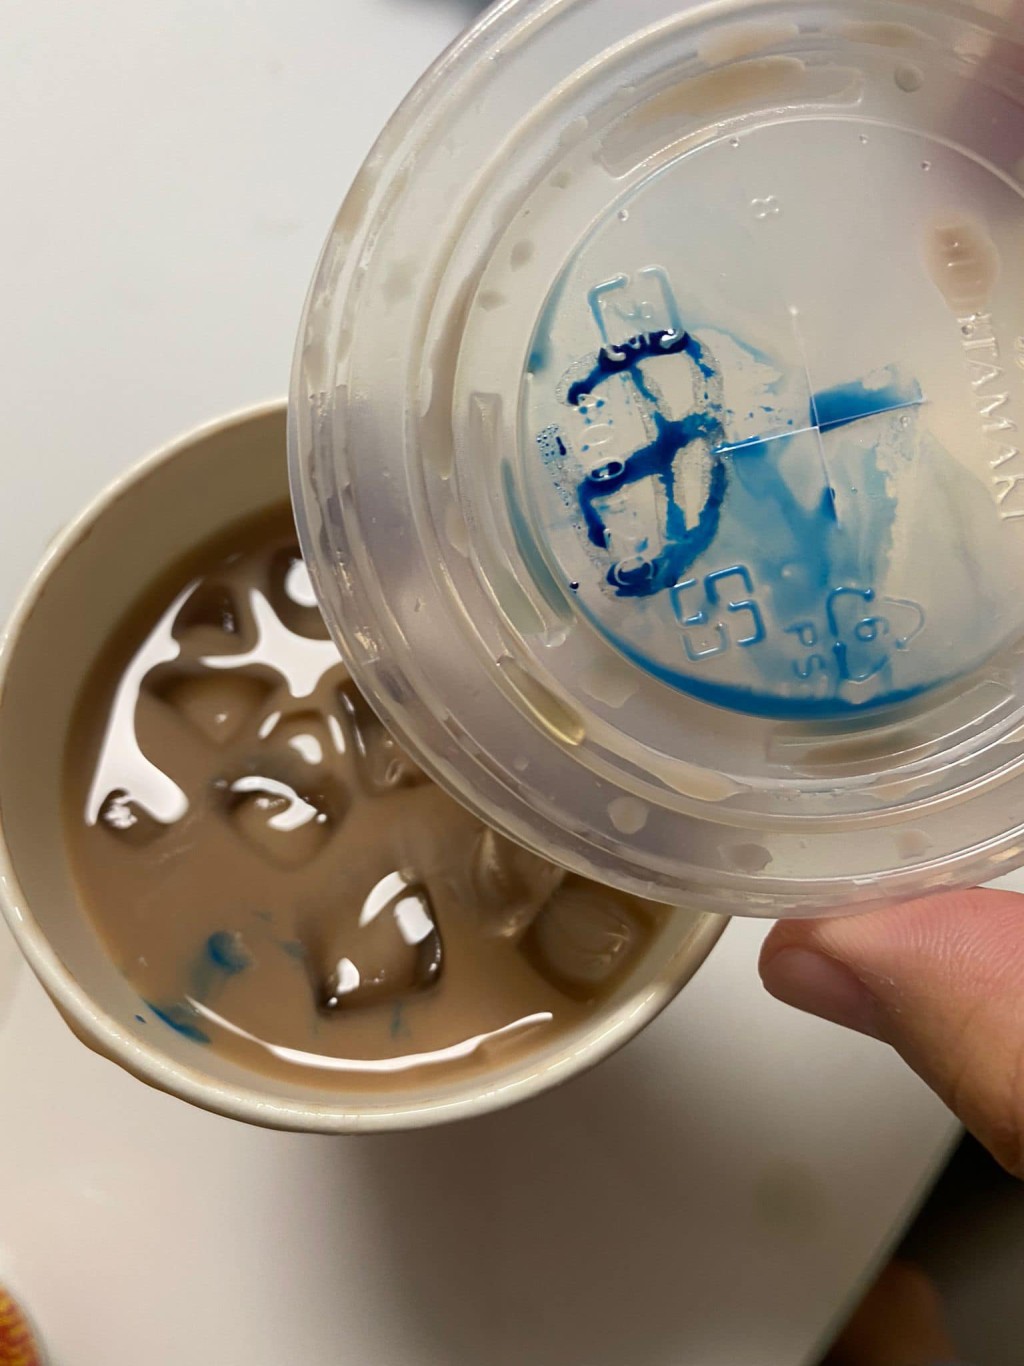 有市民发现外卖印品杯盖上标示的墨水，溶在了饮品之中。群组将军澳主场网民图片